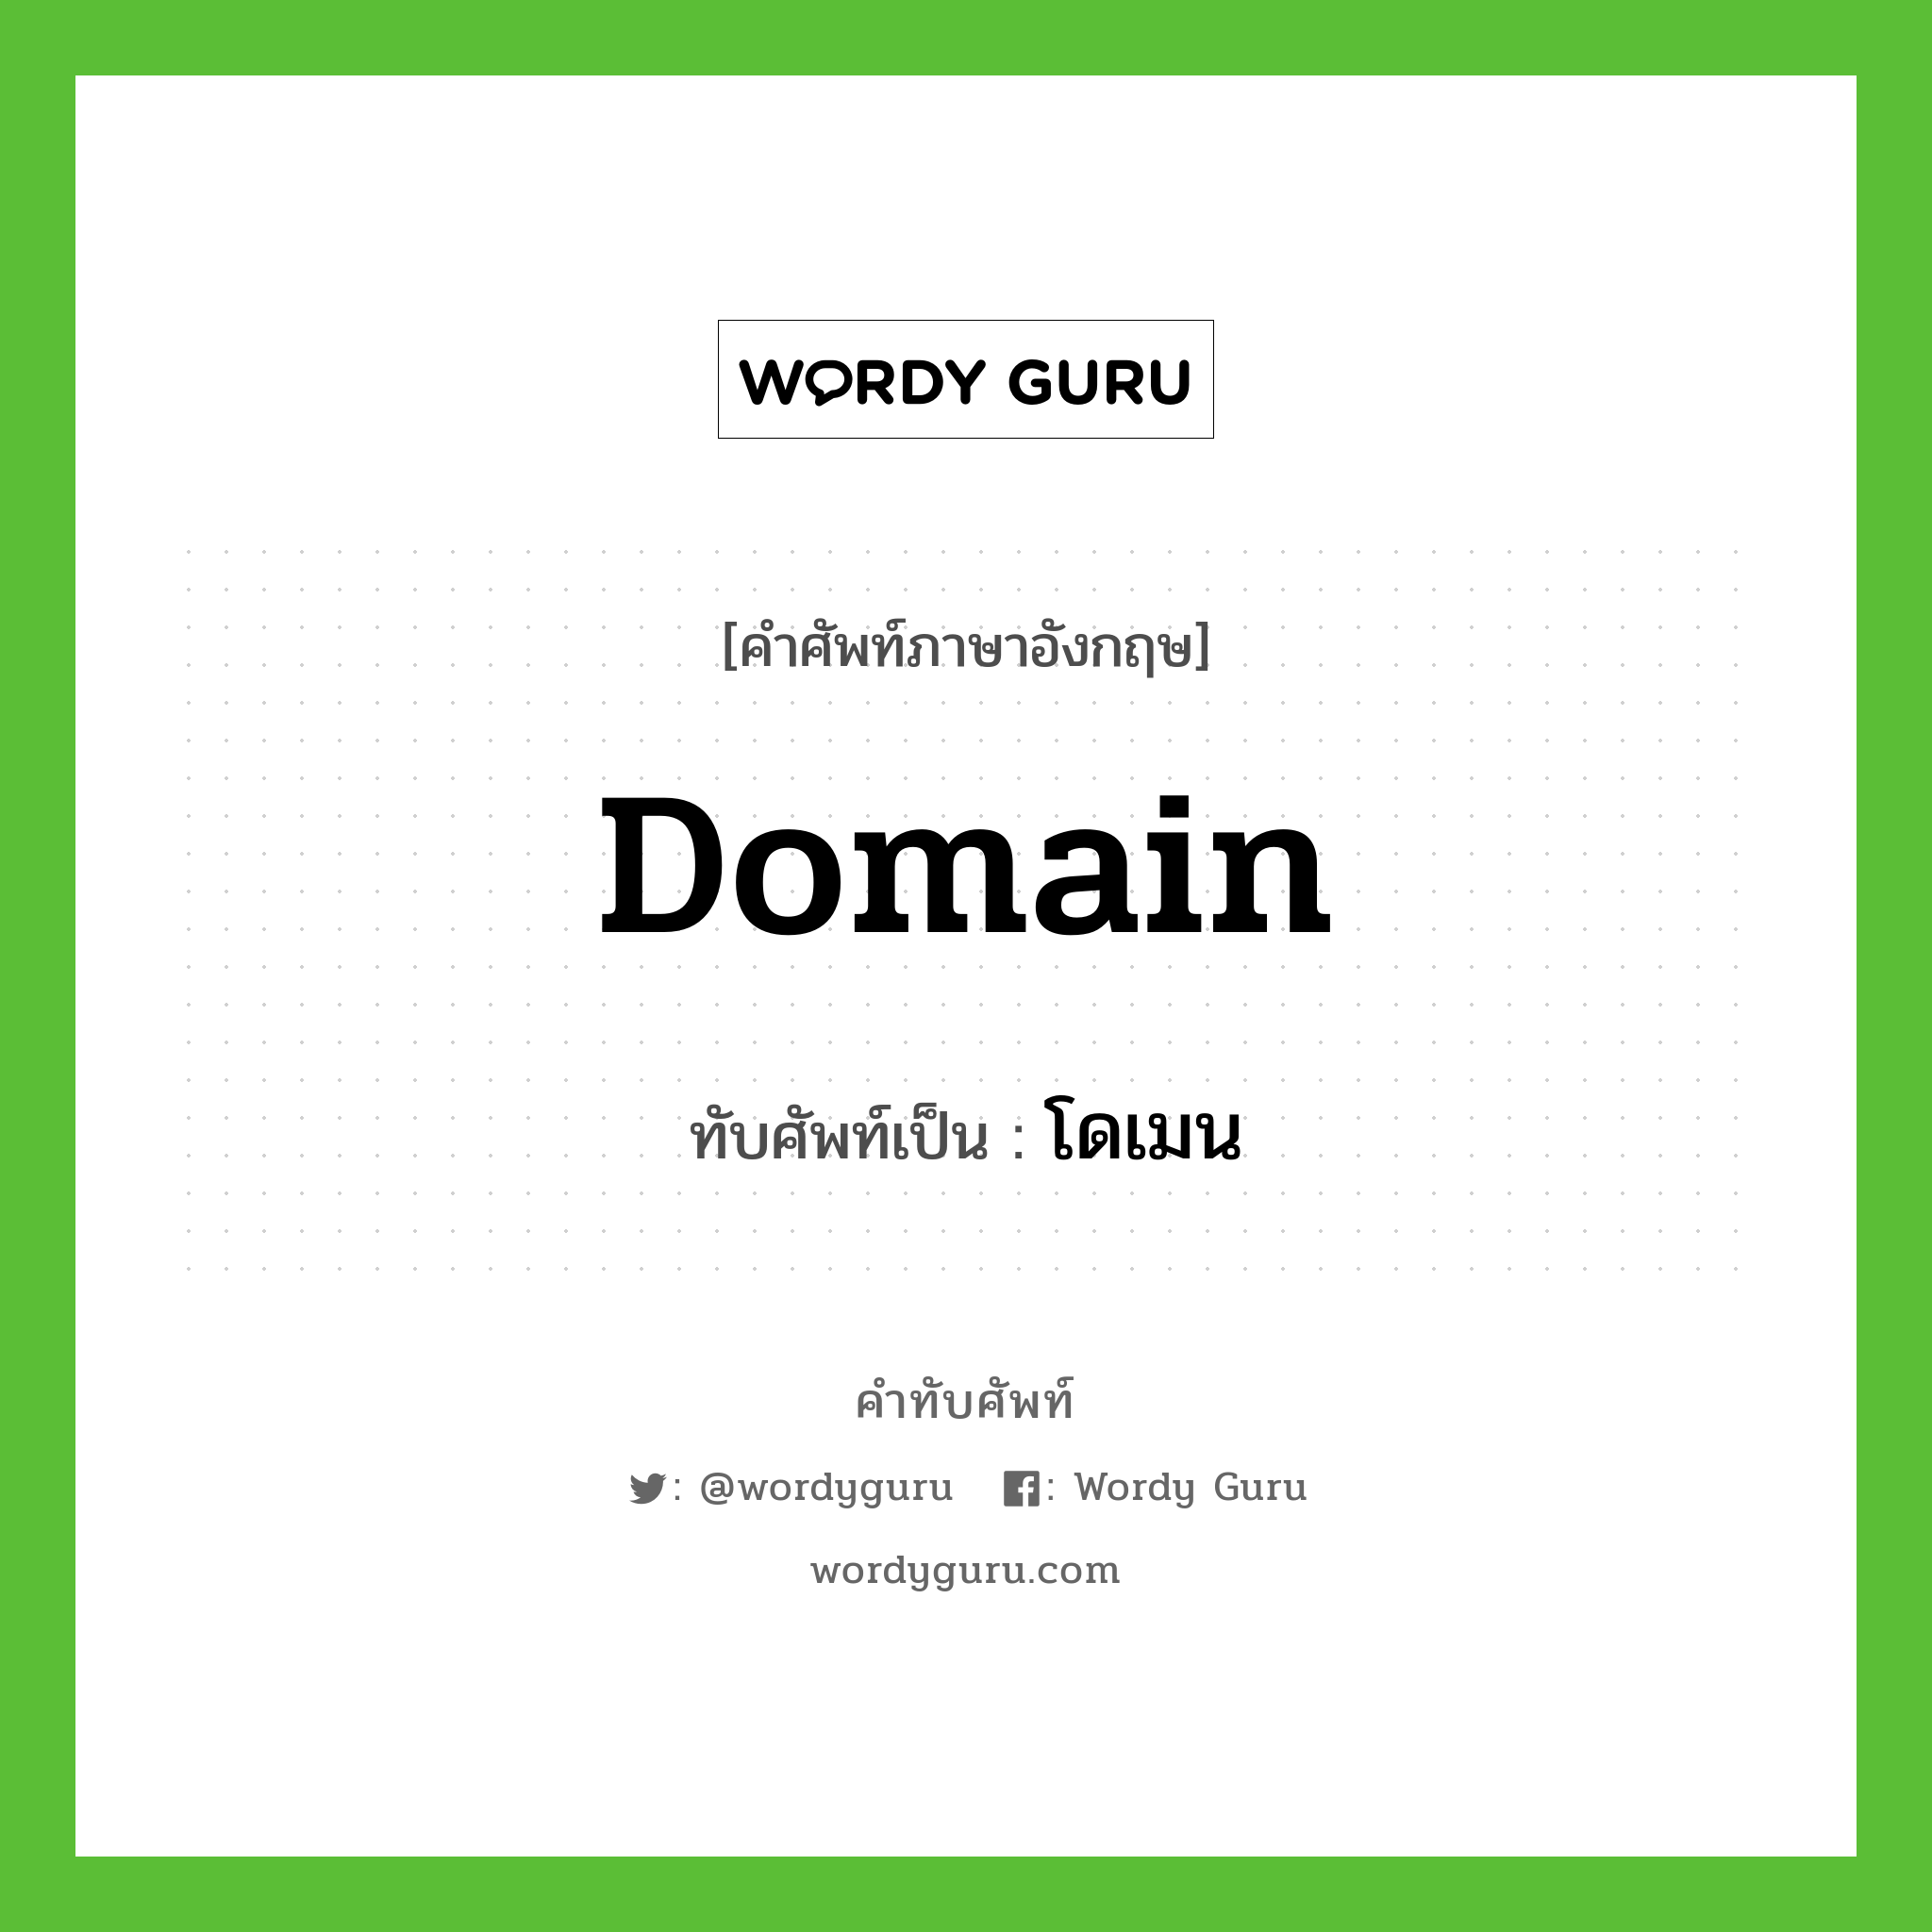 domain เขียนเป็นคำไทยว่าอะไร?, คำศัพท์ภาษาอังกฤษ domain ทับศัพท์เป็น โดเมน